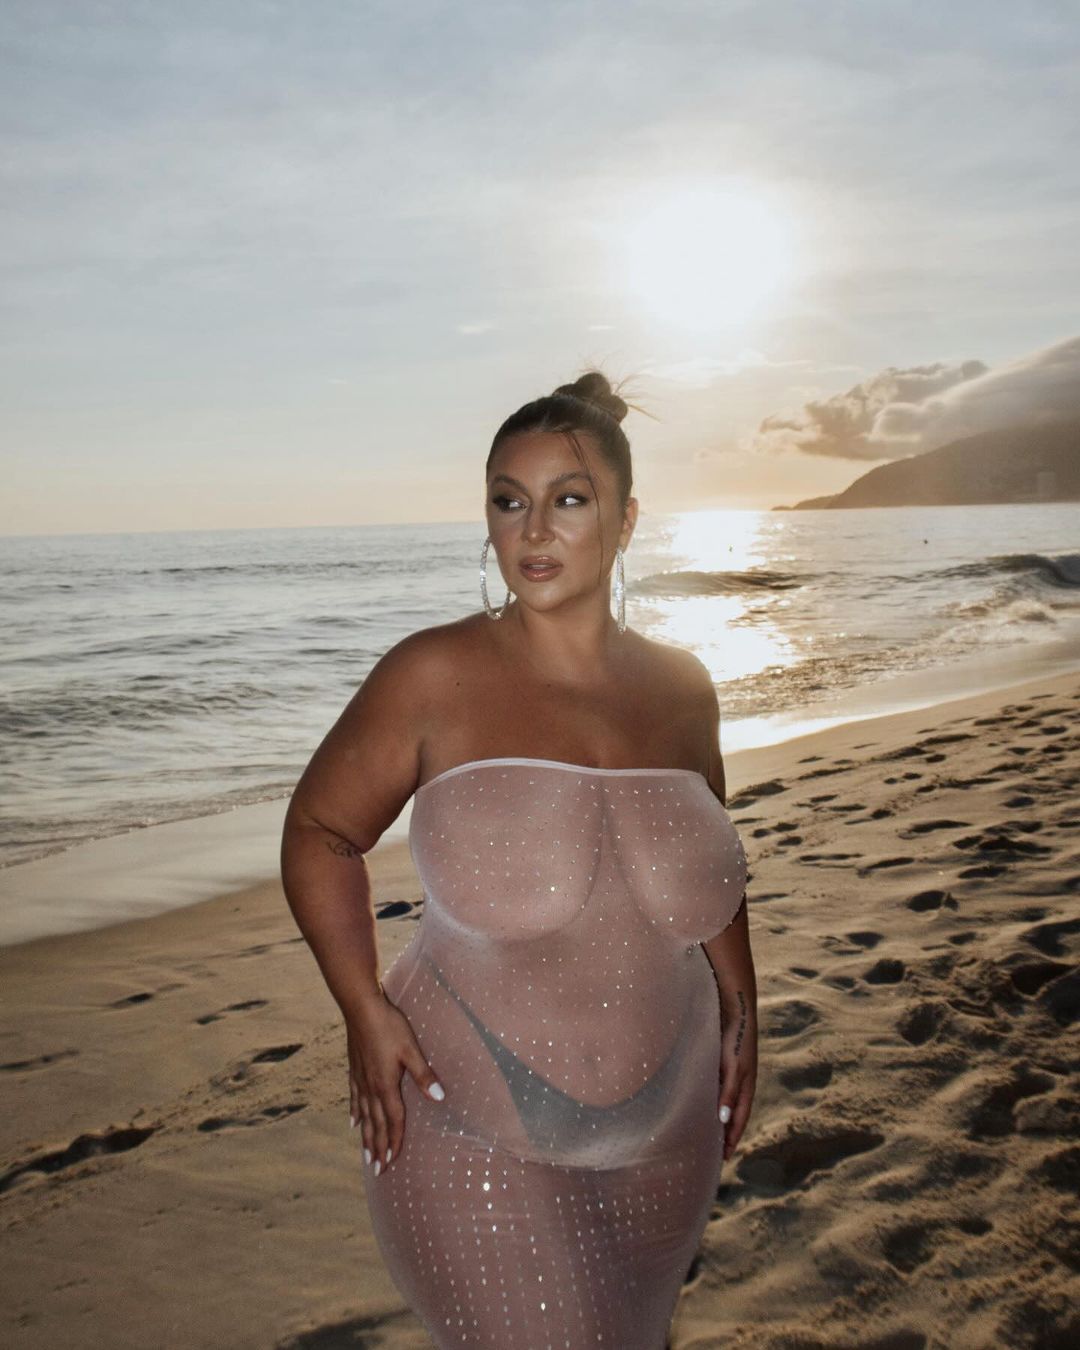 Letticia Munniz deixou curvas à mostra em vestido transparente - Foto: Reprodução/ Instagram@letticiamunniz